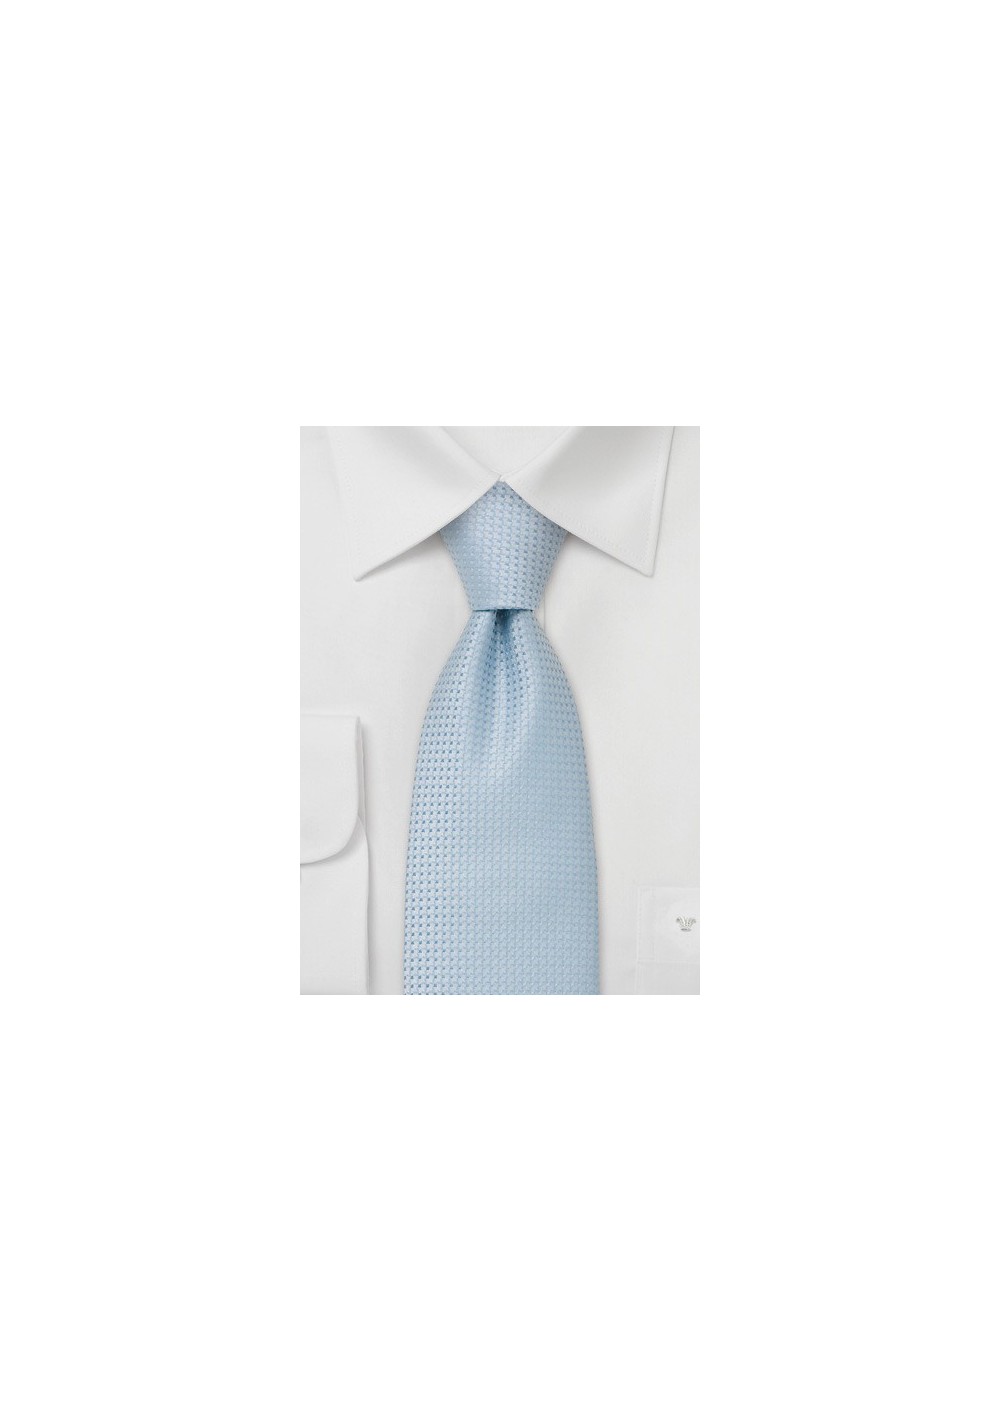 Neckties - Light blue necktie